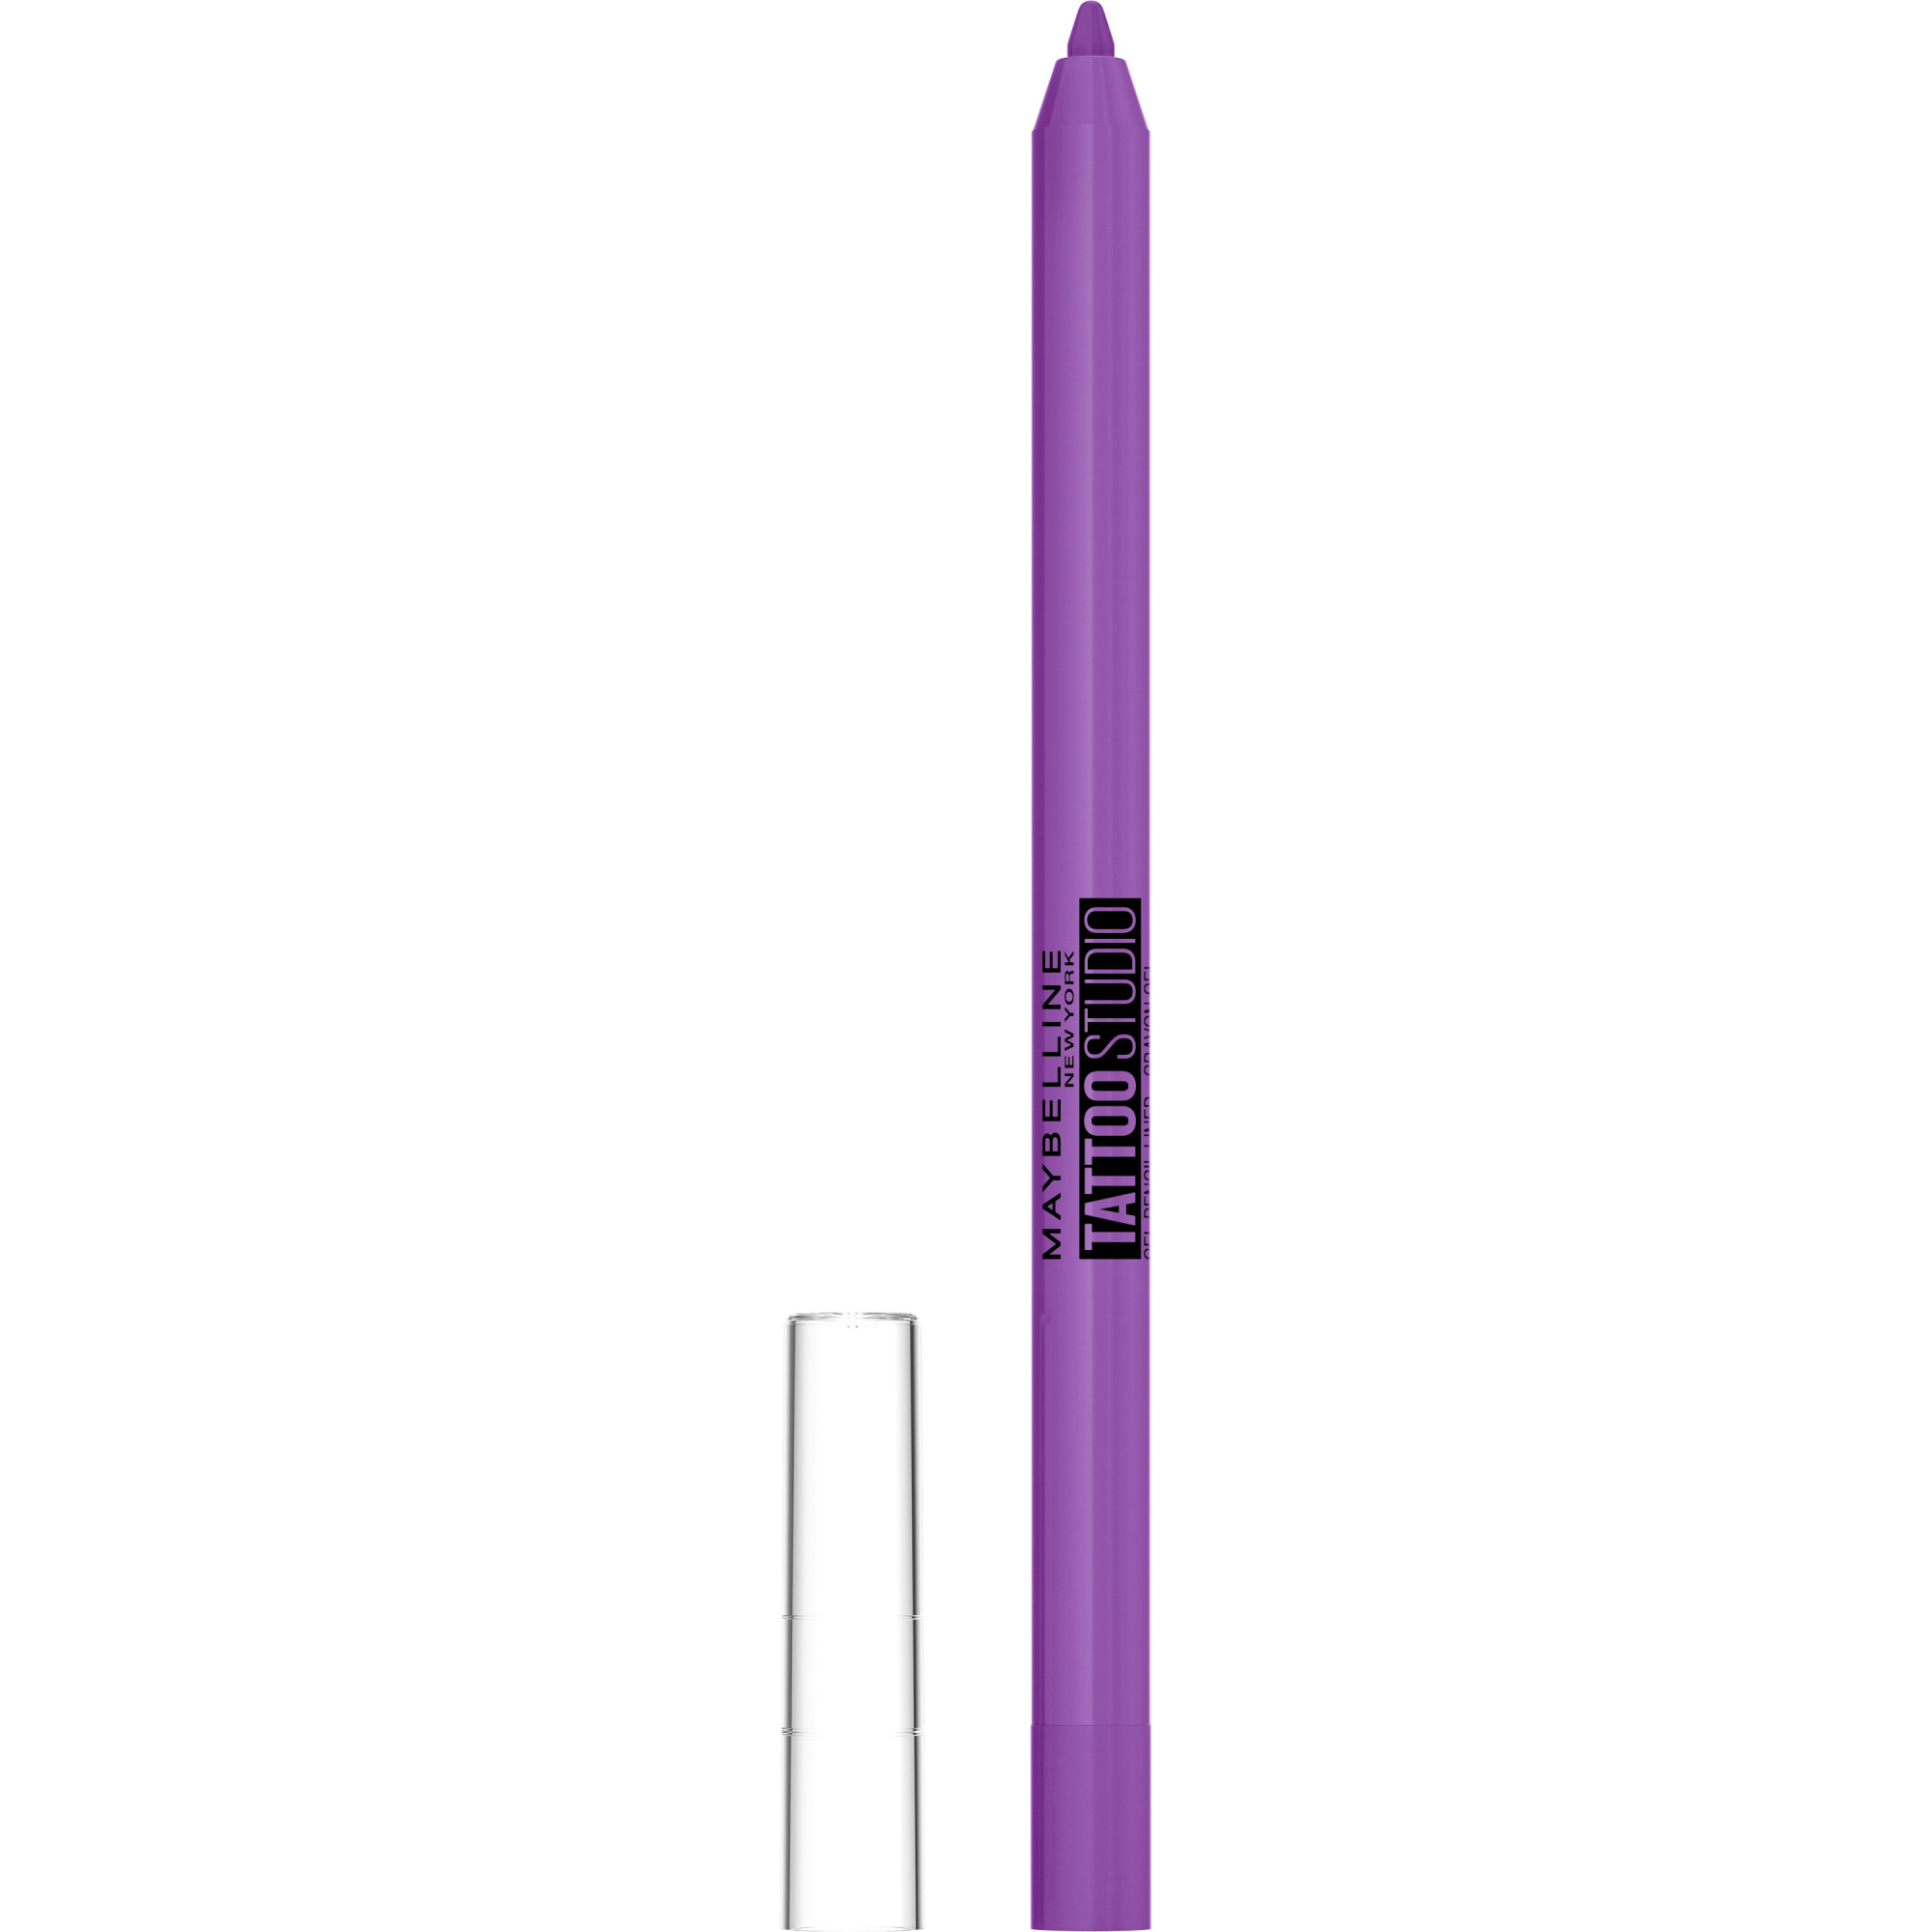 Bilde av Maybelline Tattoo Liner Gel Pencil Limited Edition Eyeliner Purplepop 301 - 1,2 G